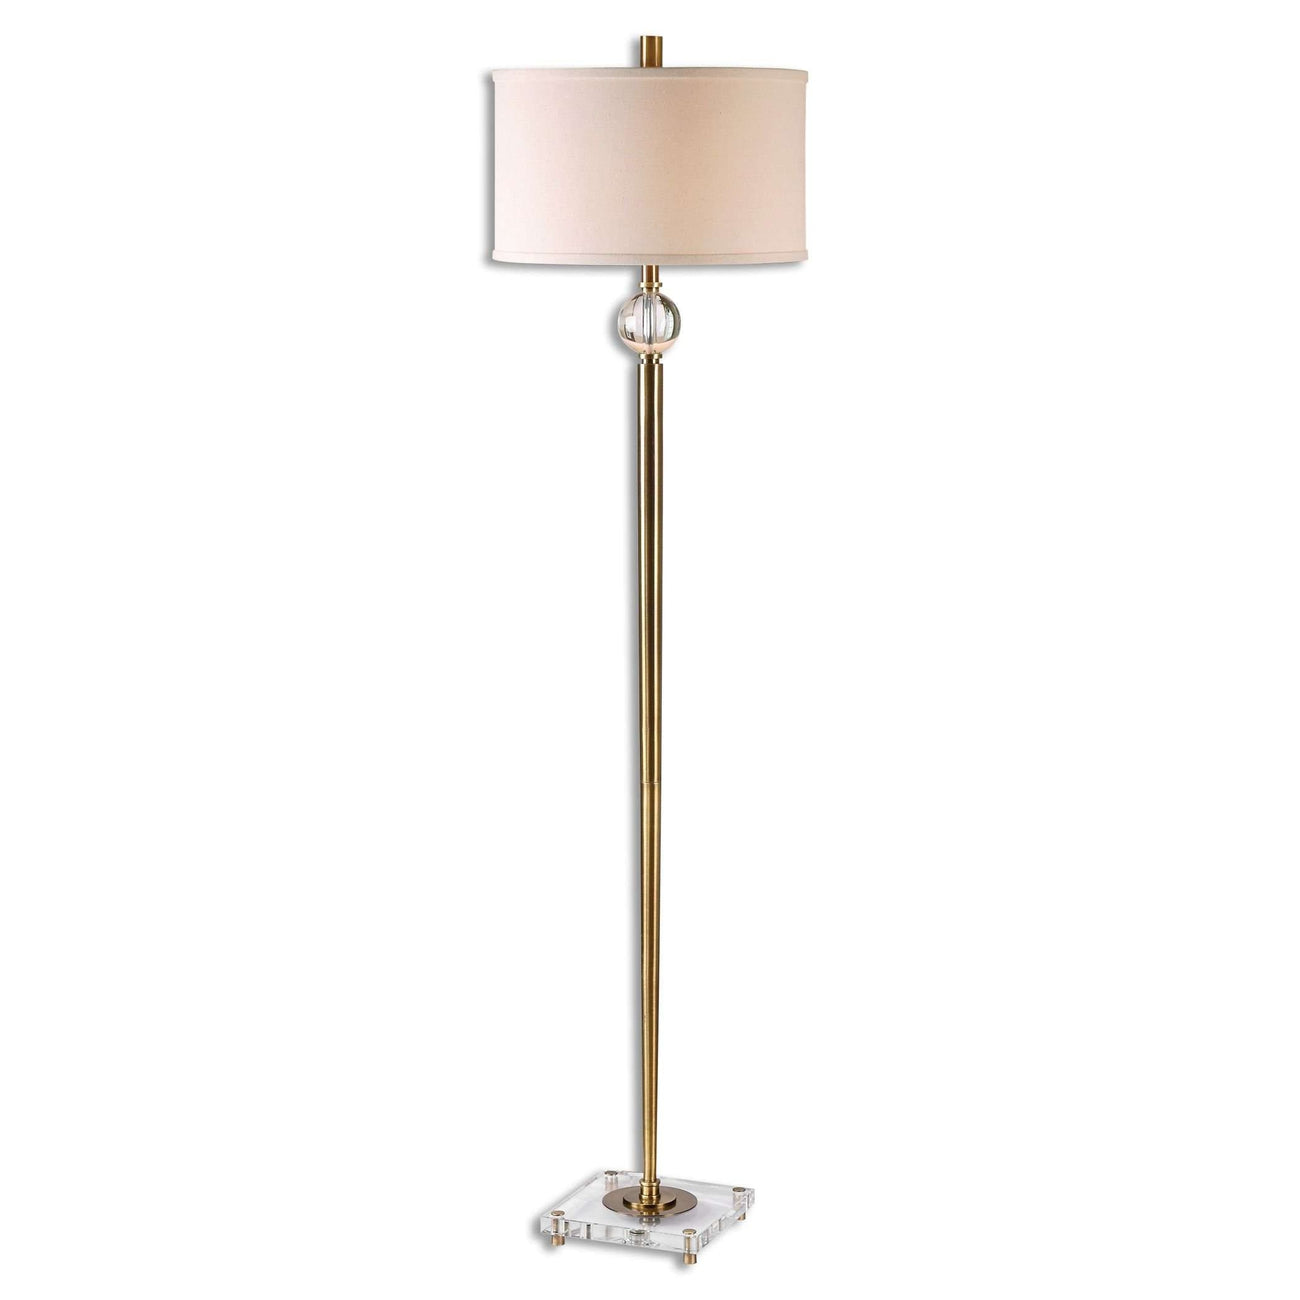 Mesita Brass Floor Lamp-Uttermost-UTTM-28635-1-Floor Lamps-1-France and Son